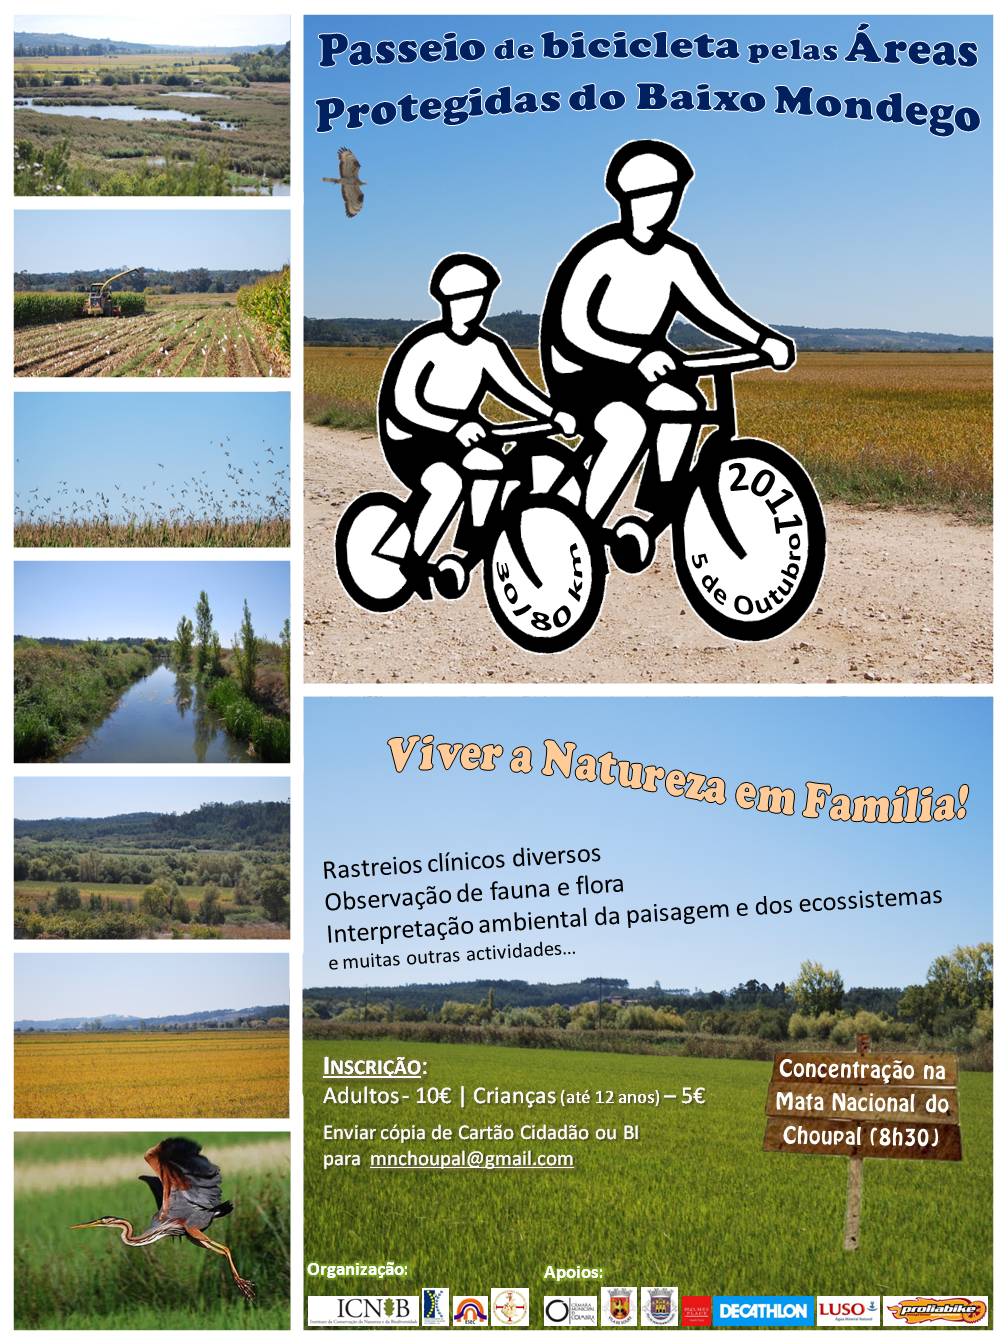 Passeio de Bicicleta pelas áreas protegidas do Baixo Mondego 